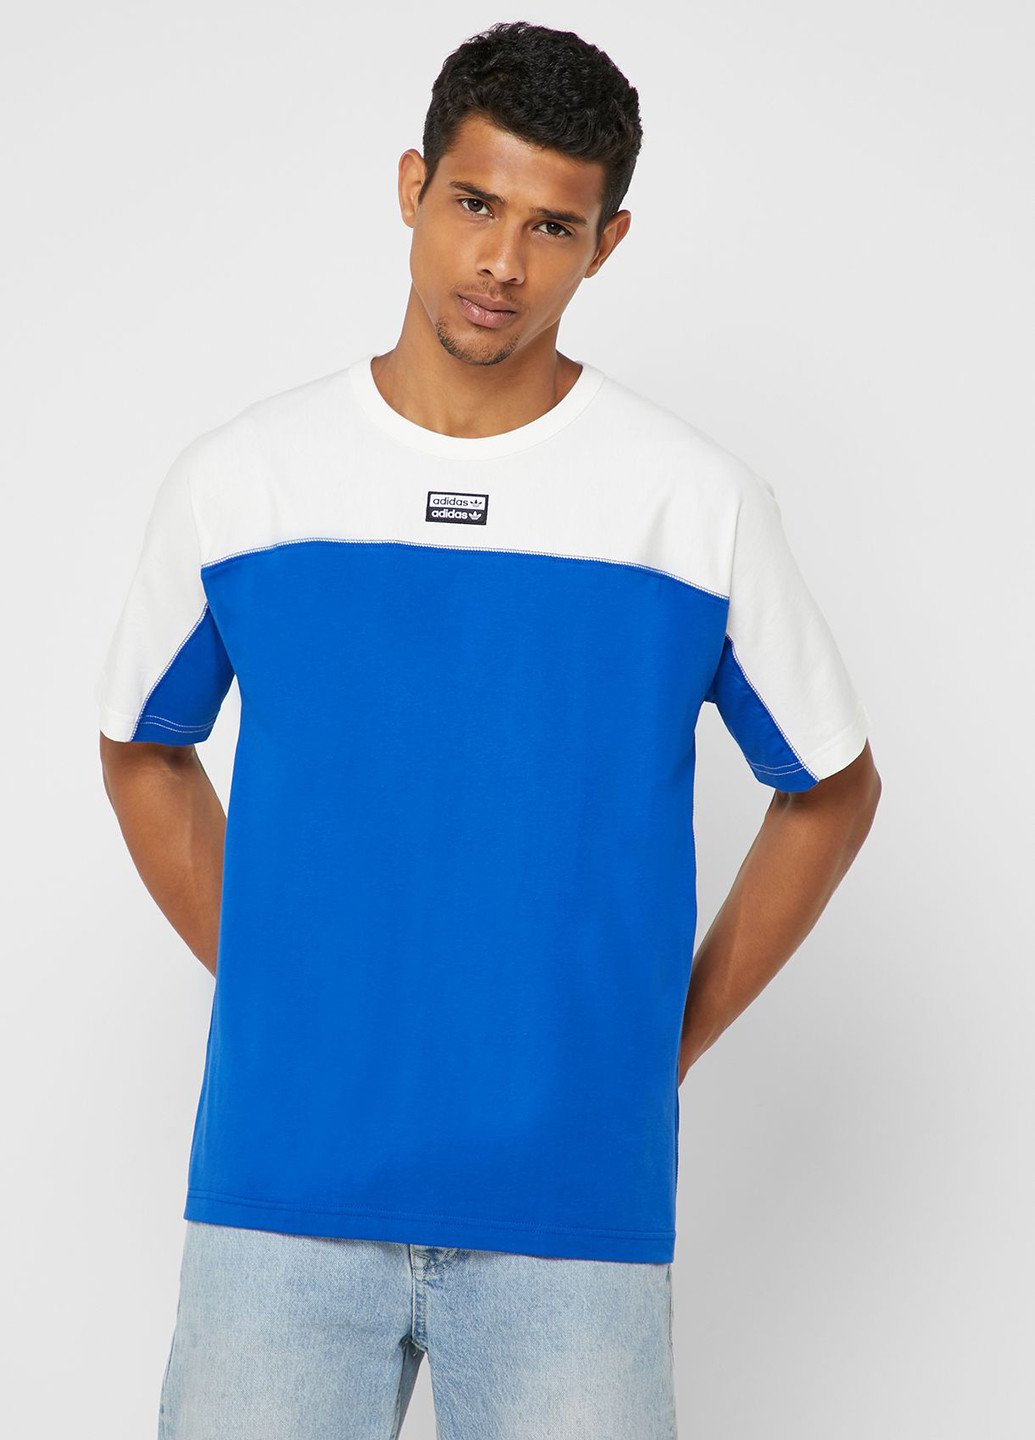 Синяя футболка adidas